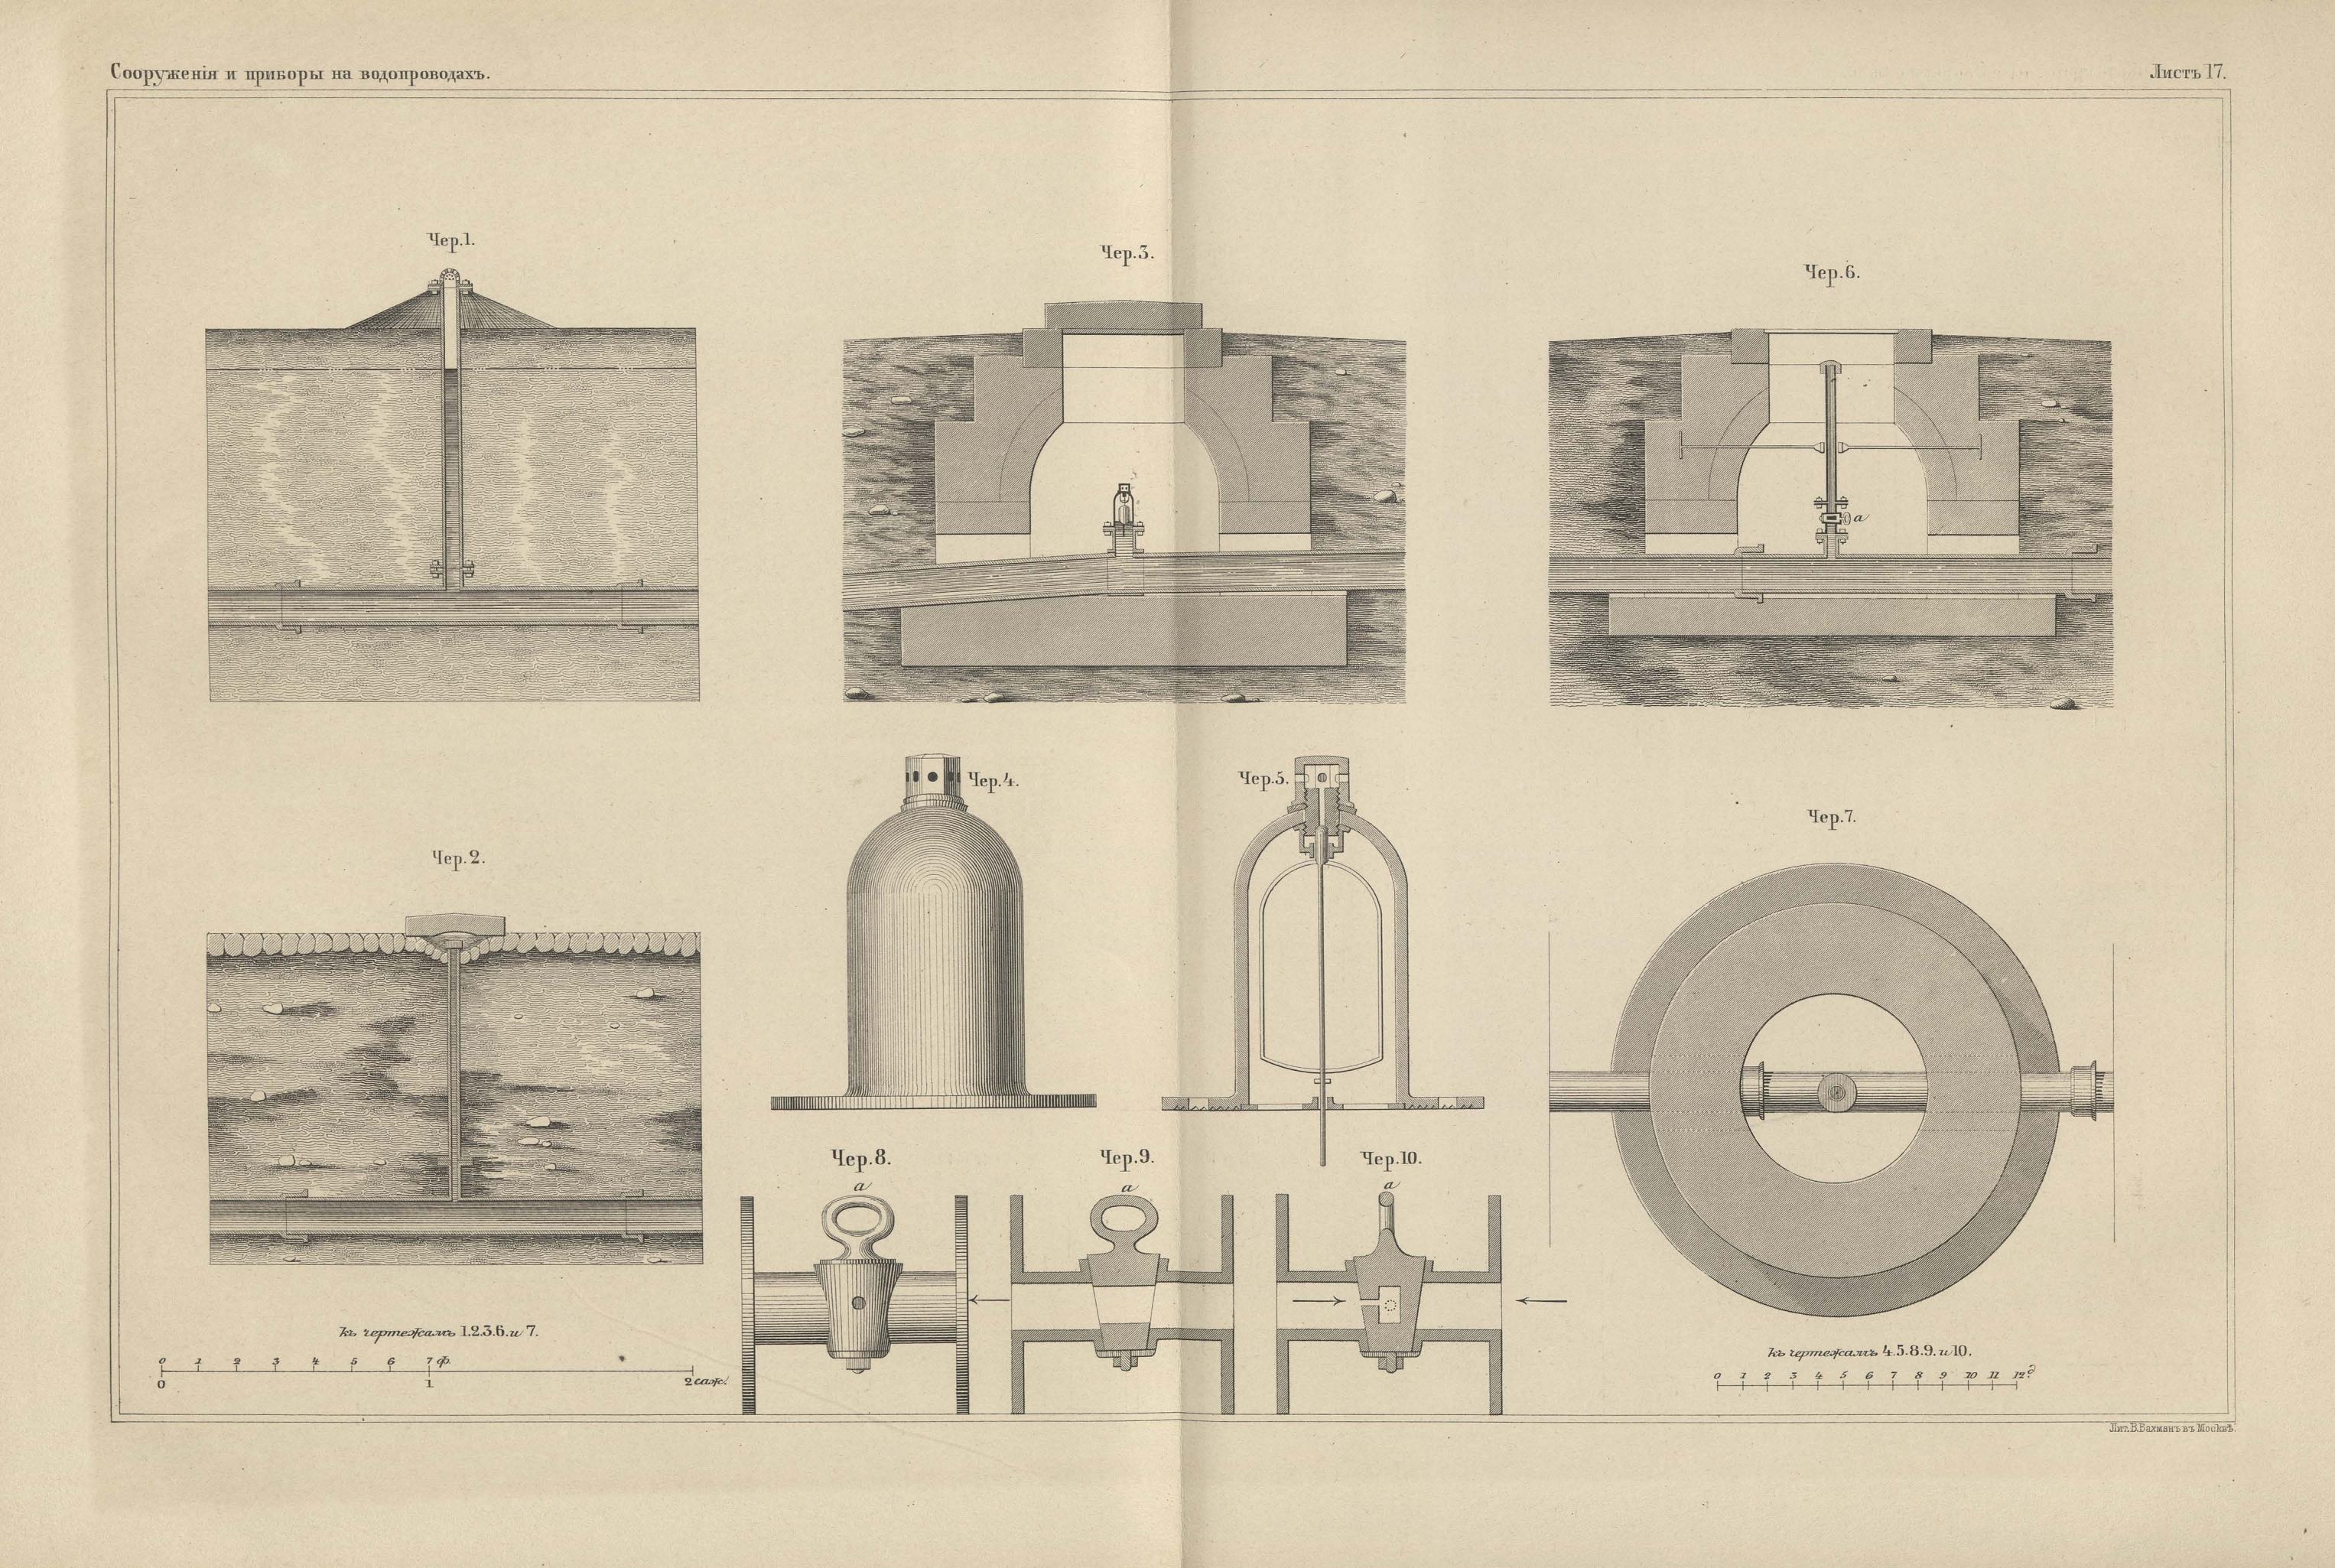 Руководство к устройству водопроводов. Чертежи / составлено бароном А. И. Дельвигом. 1857